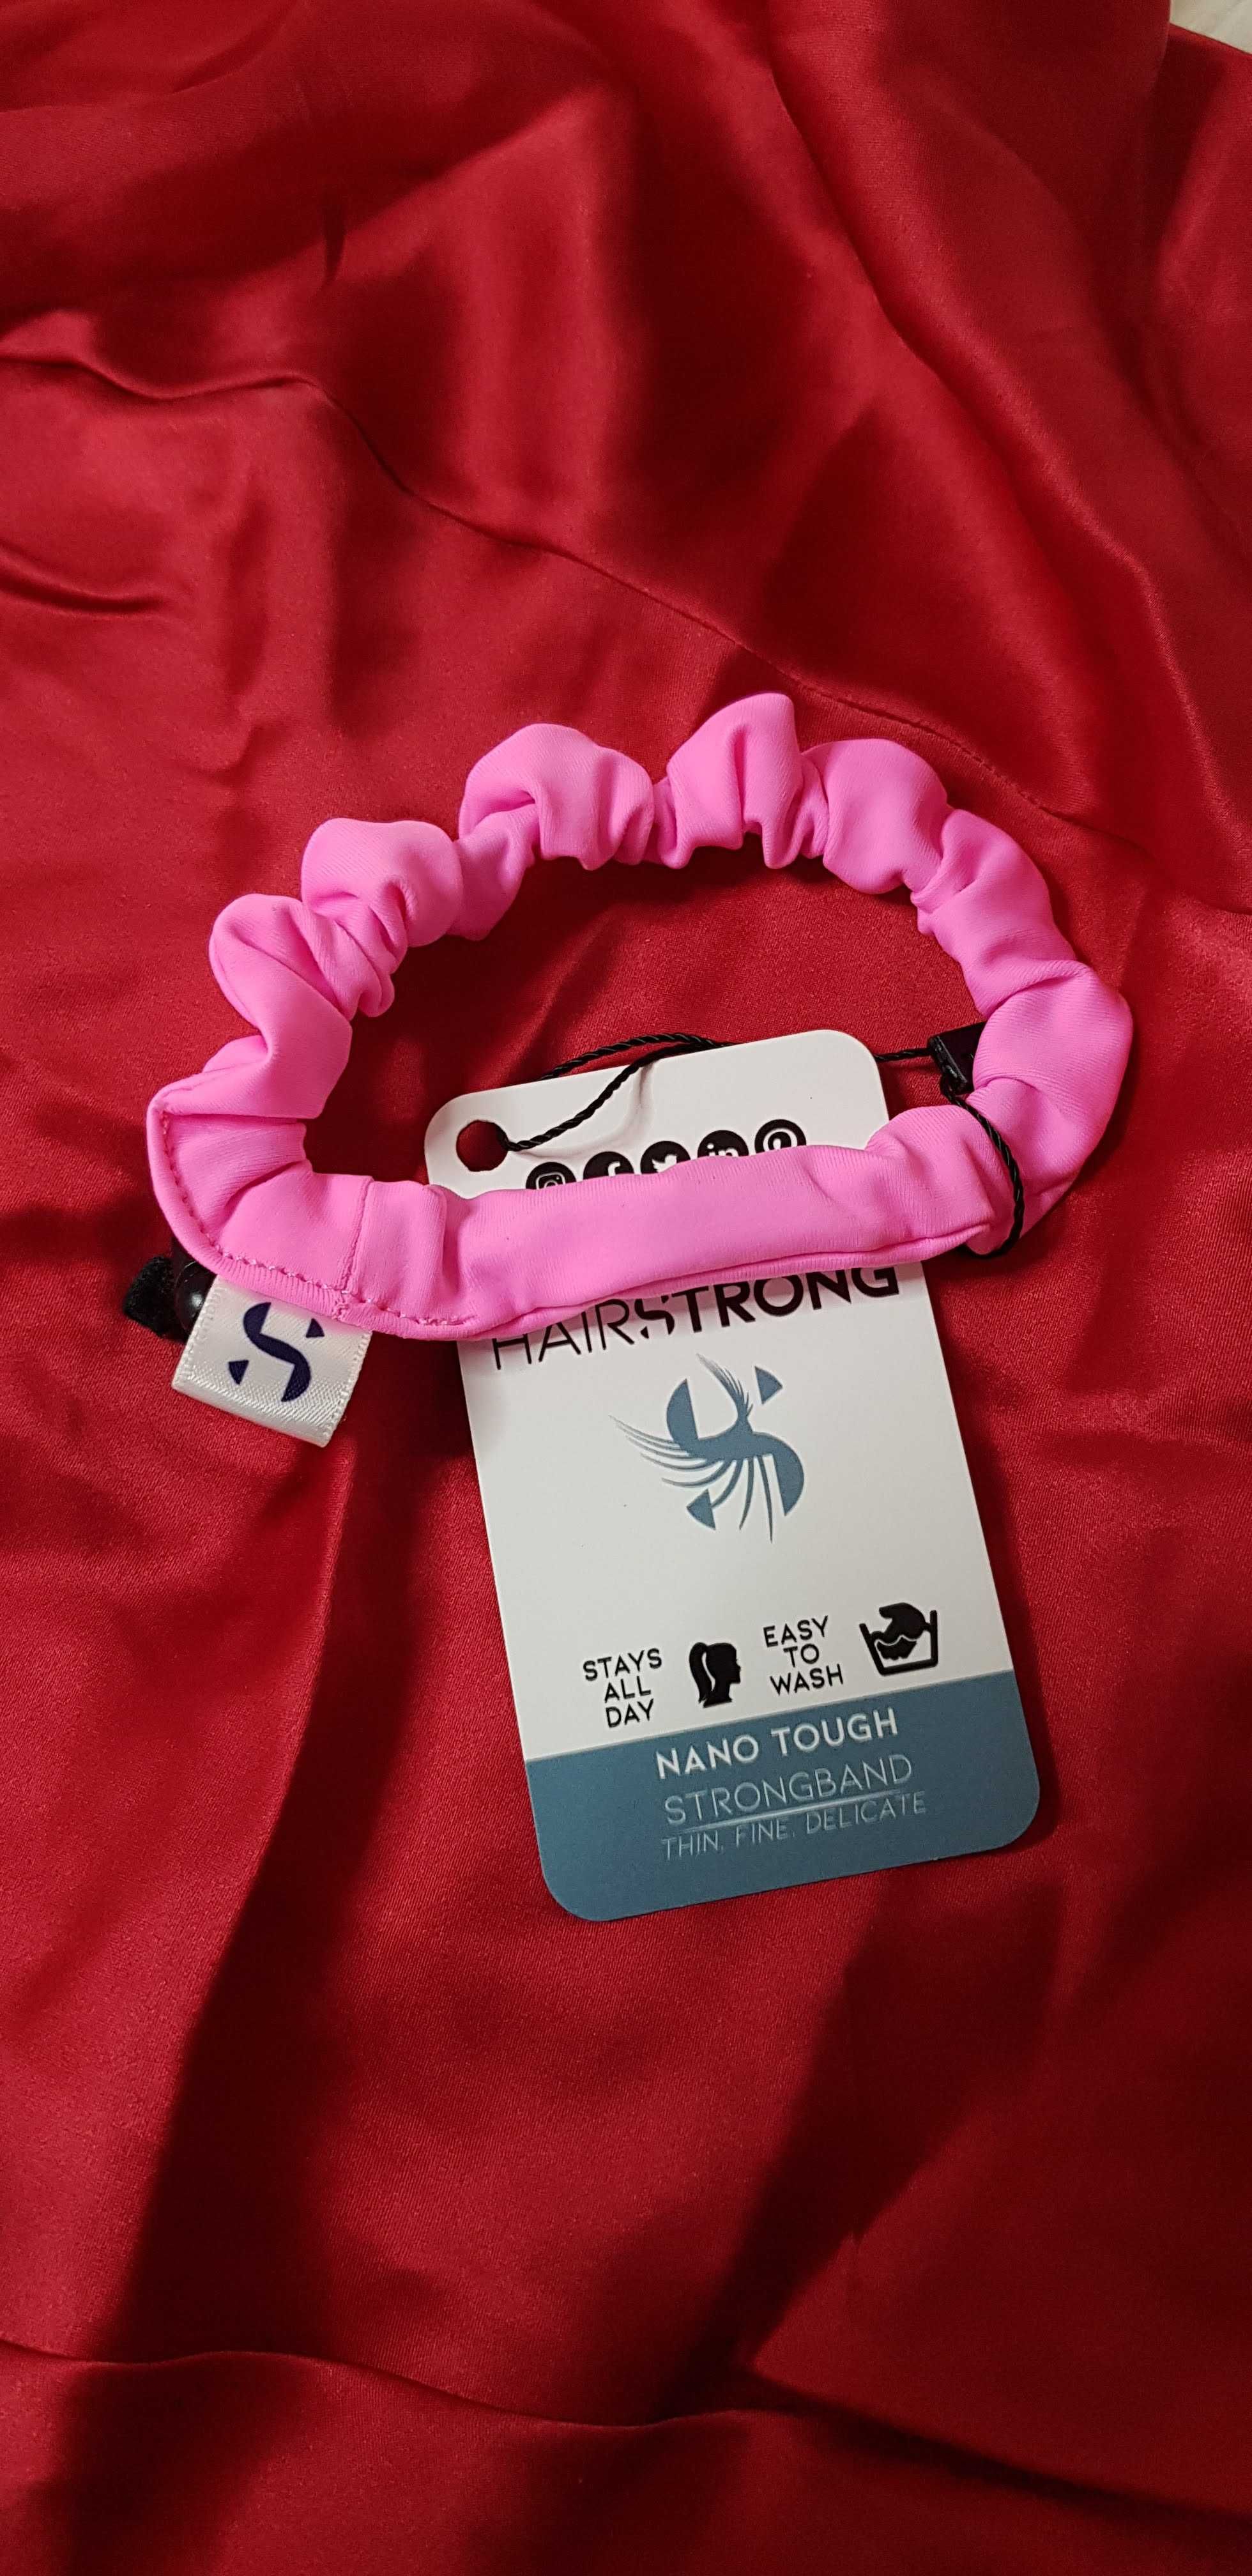 Nowa Strongband sportowa scrunchie różowa dla włosomaniaczki